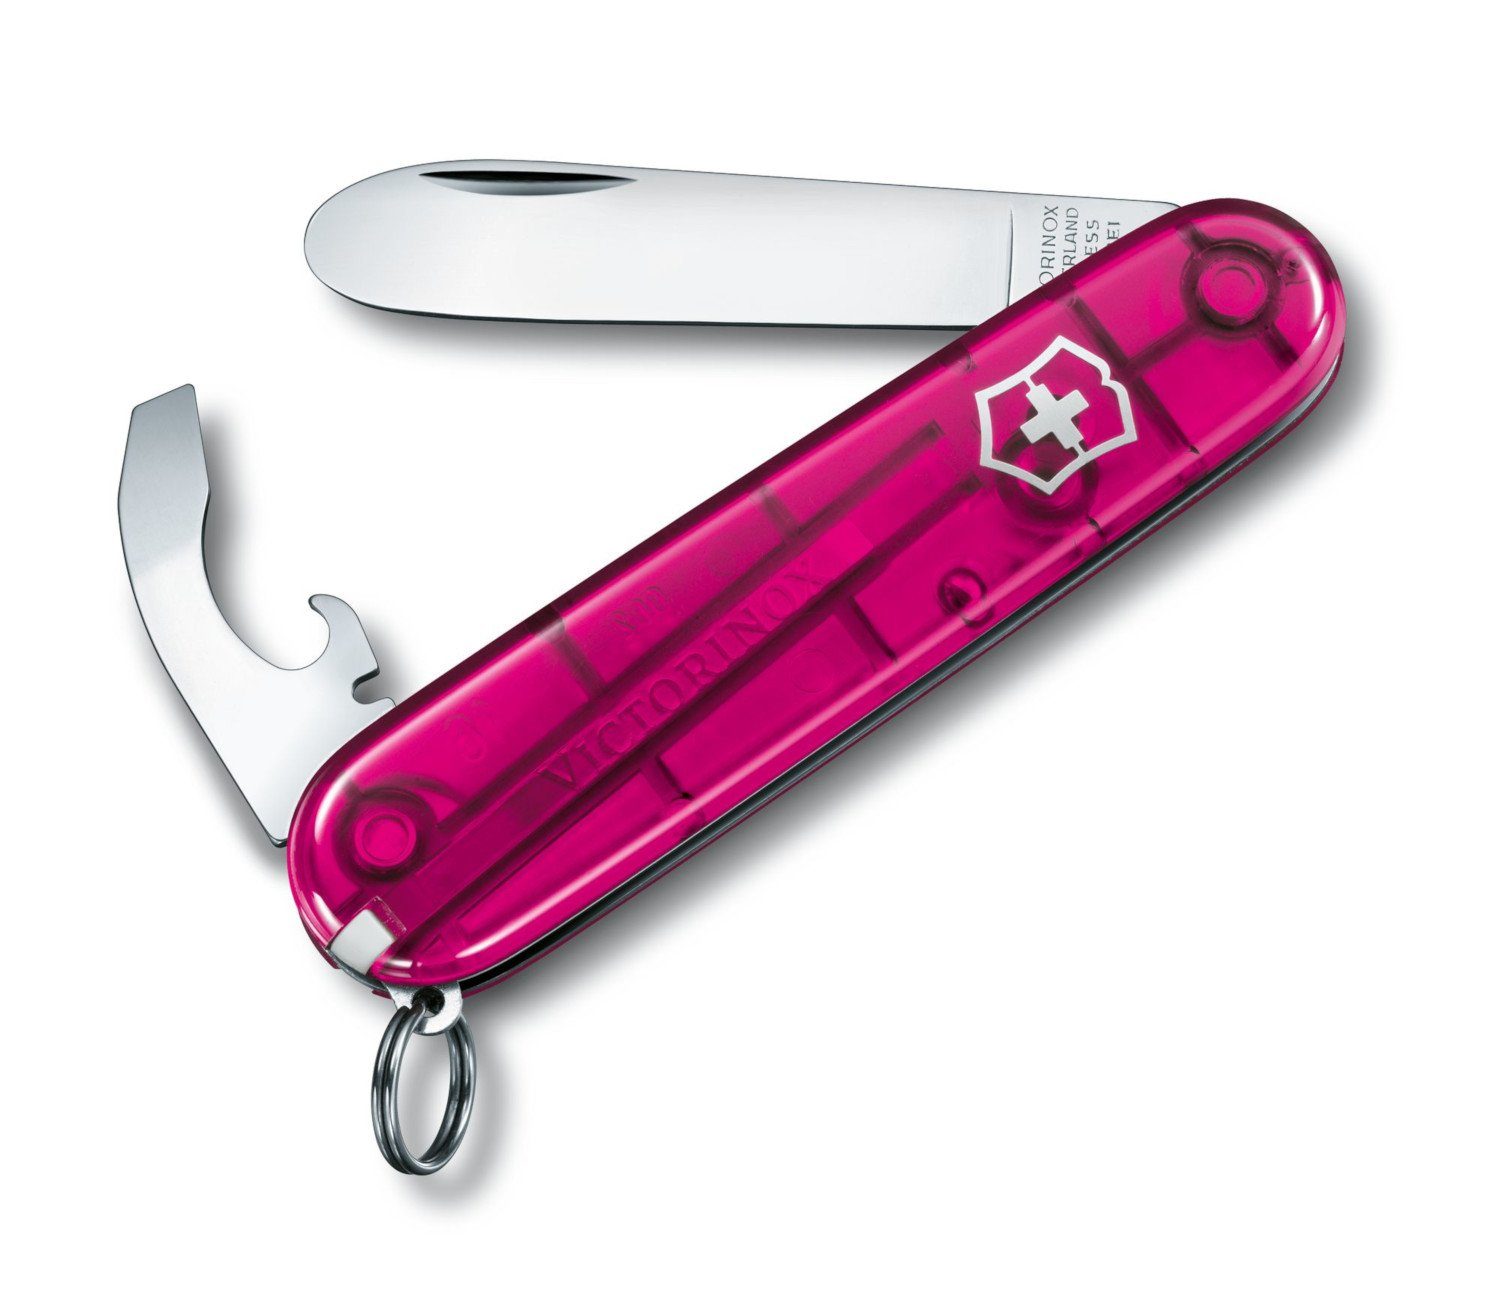 Victorinox Taschenmesser My First Taschenmesser für Kinder 0.2363.T5 8 Funktionen pink transparent pink